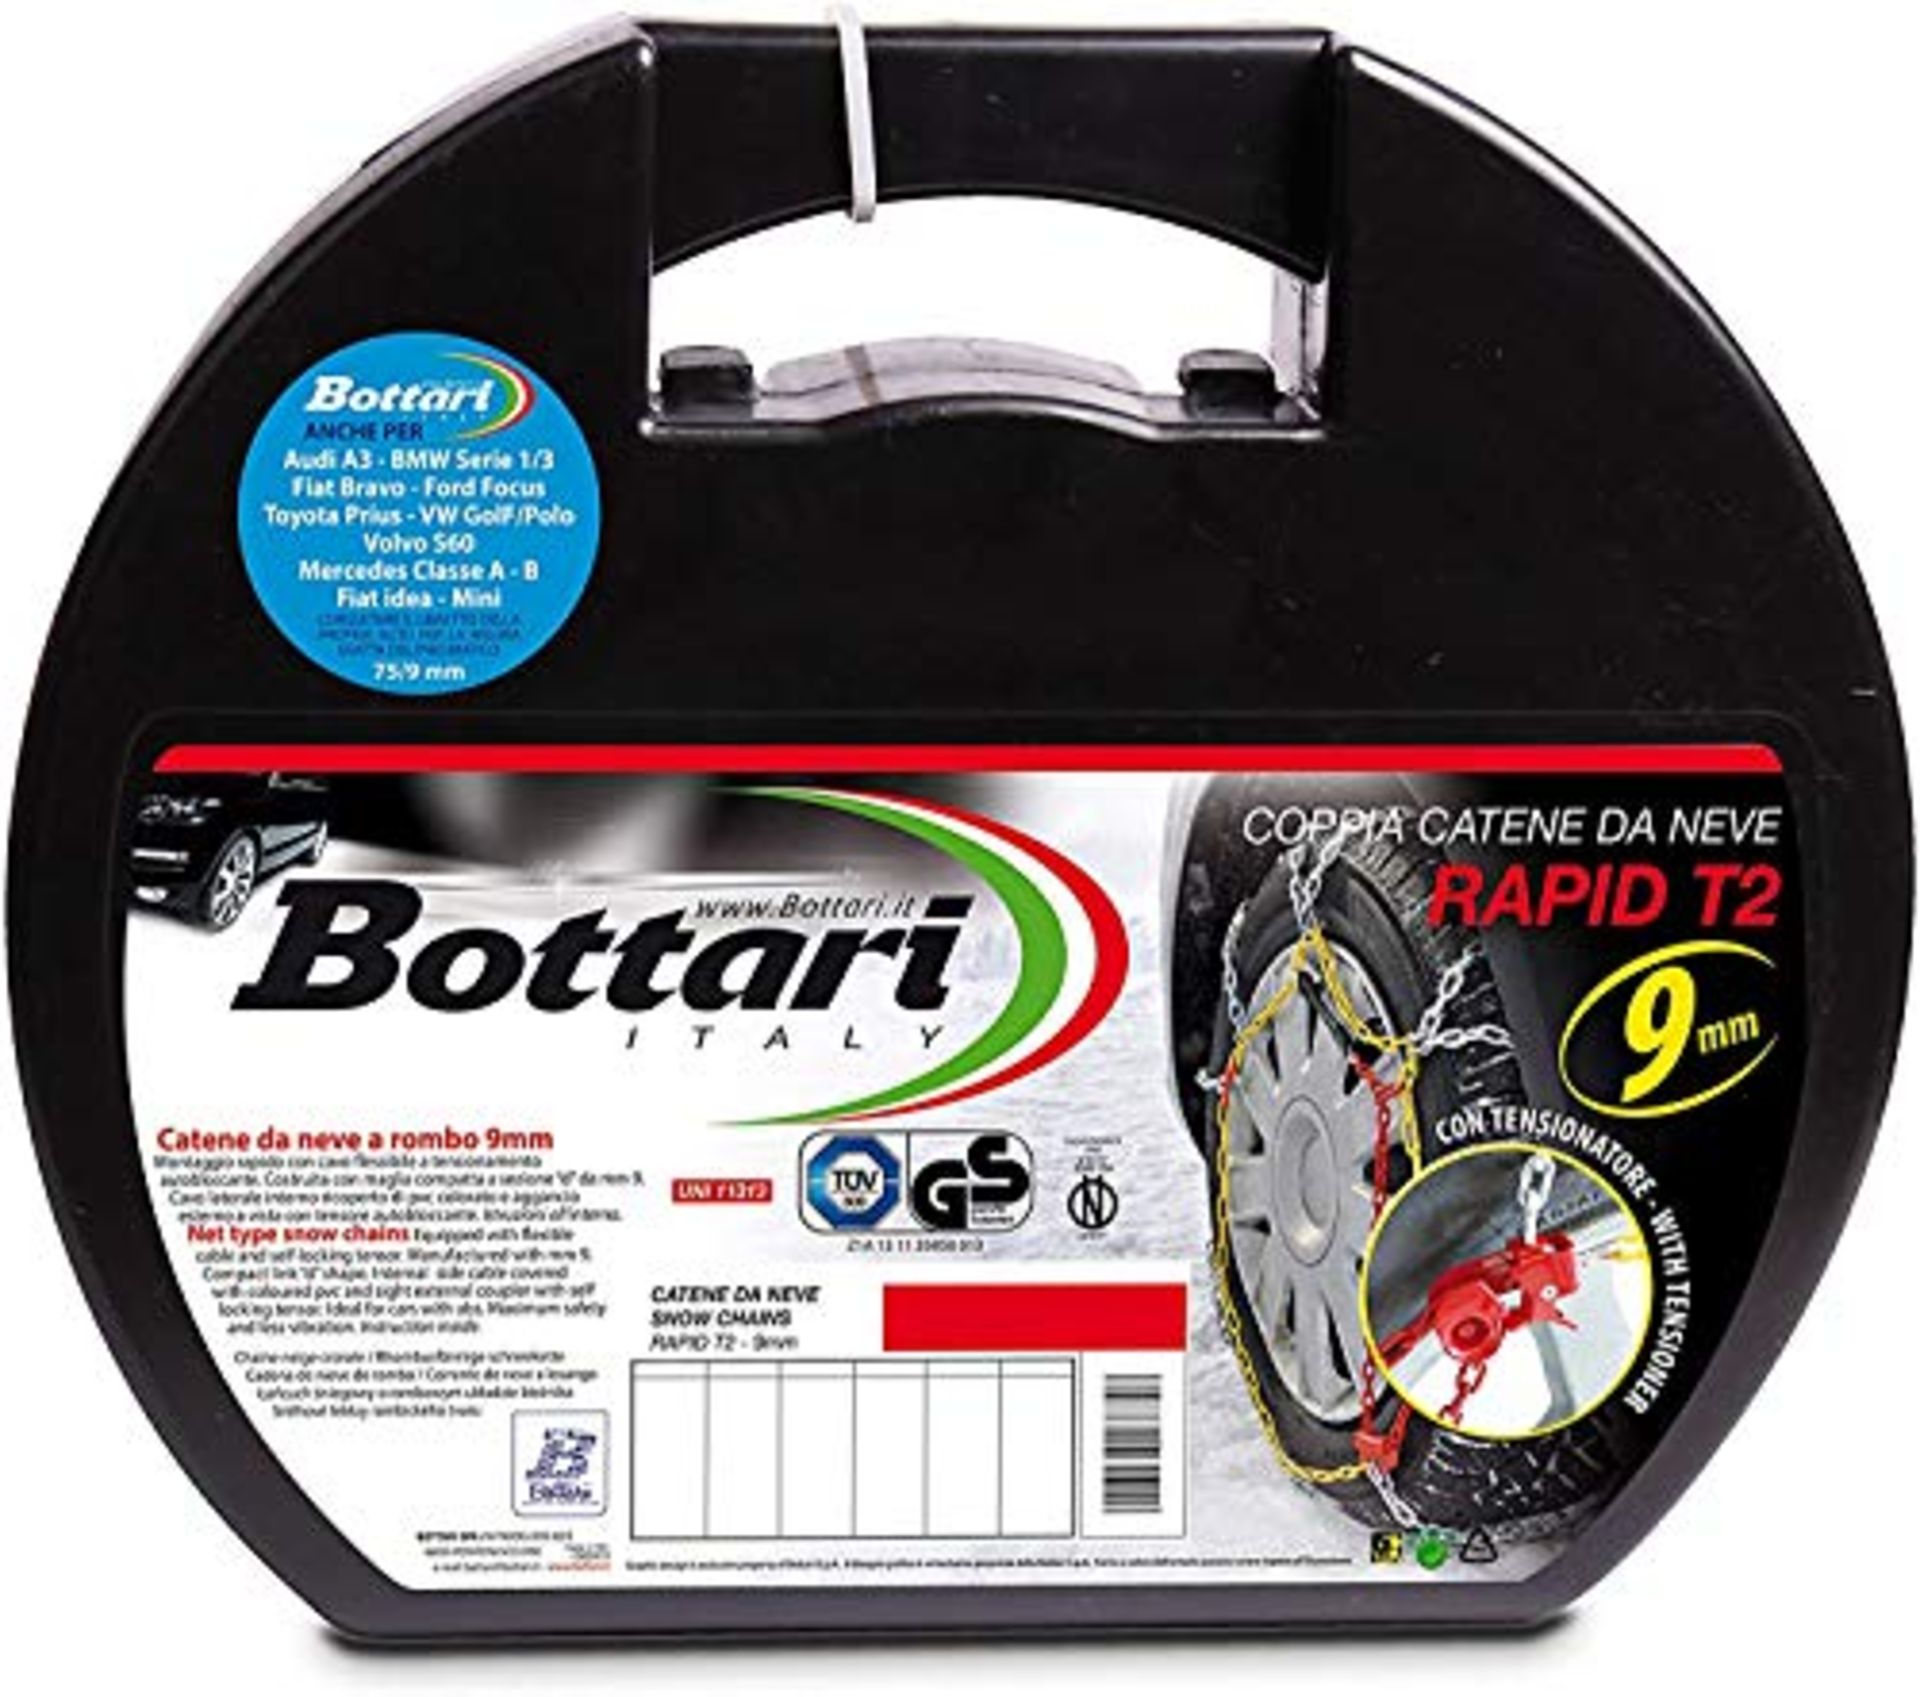 Bottari [Goodyear] 18833  Rapid T2" 9mm Snow Chains, Size 130, ABS and ESP Compatibl